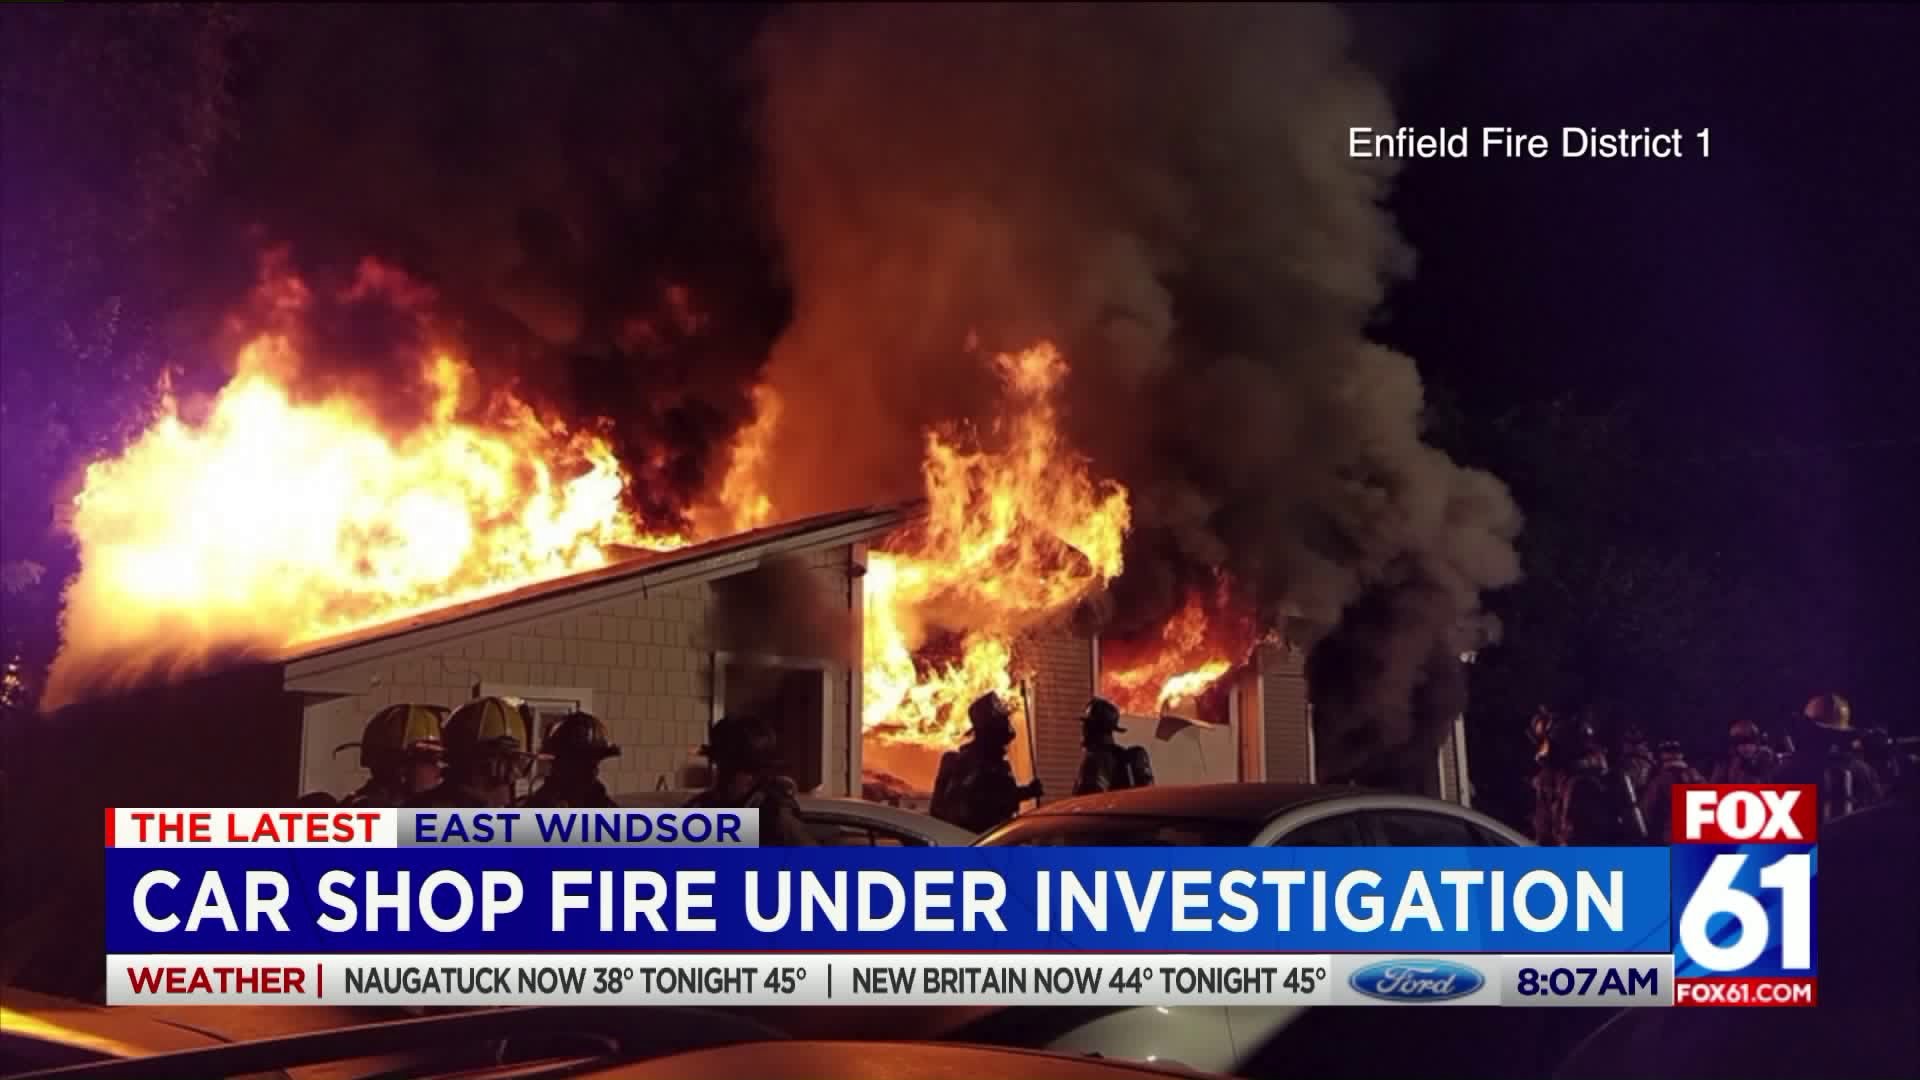 Fire under investigation